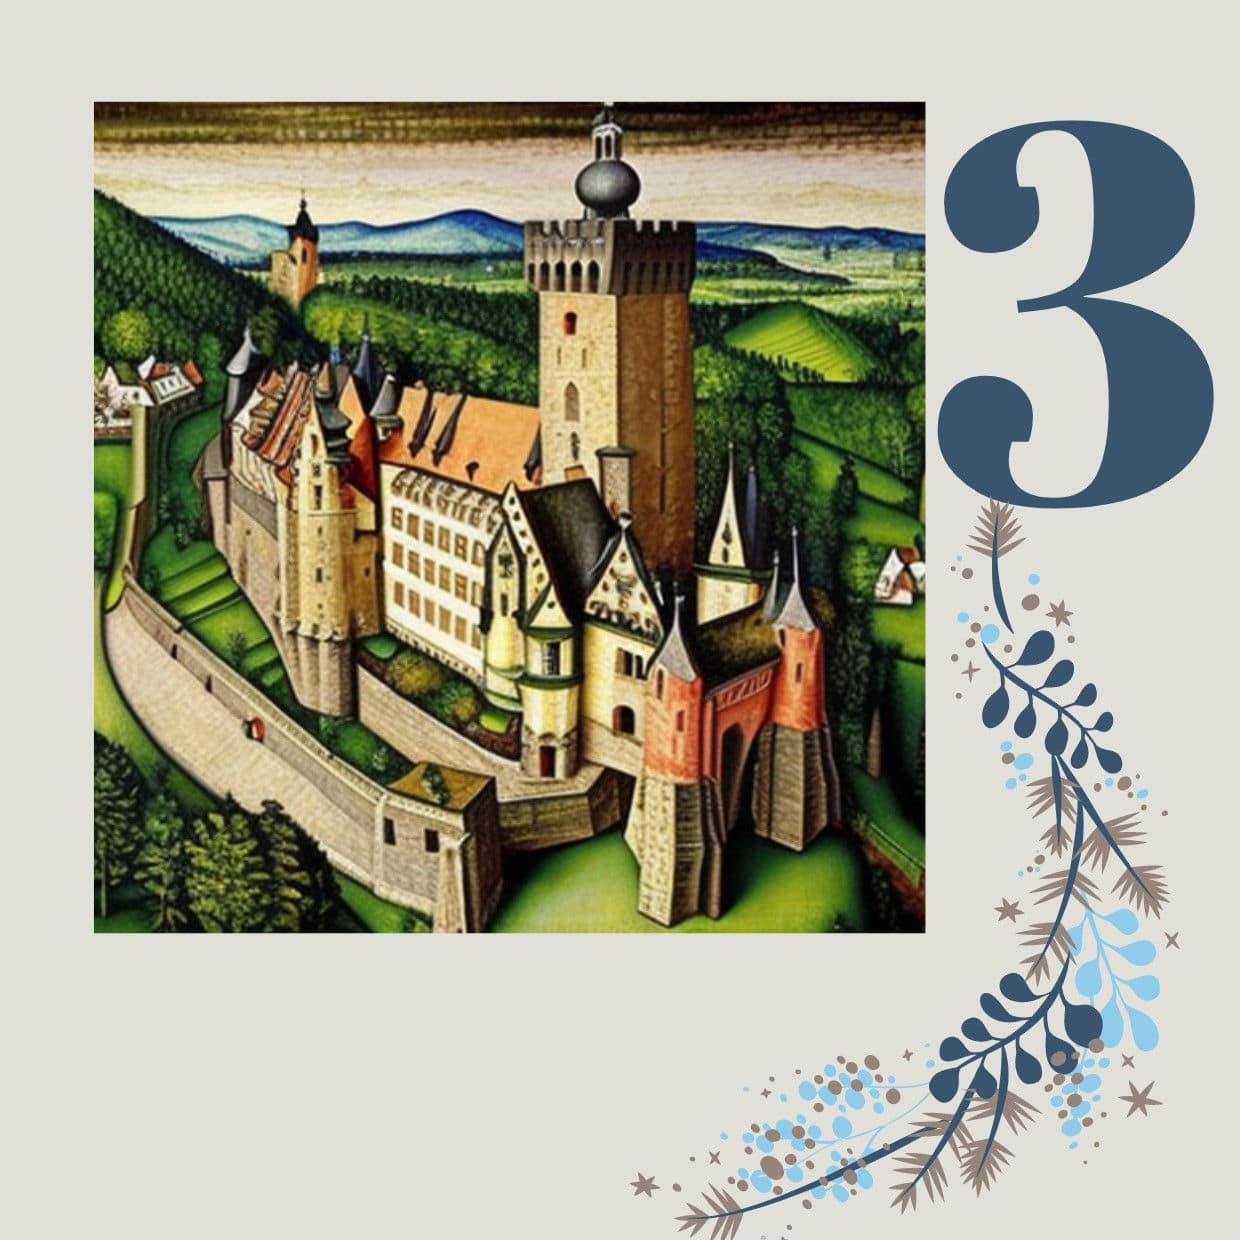 Die Wartburg im Stil von Lucas Cranach – dem deutschen Maler der Renaissance